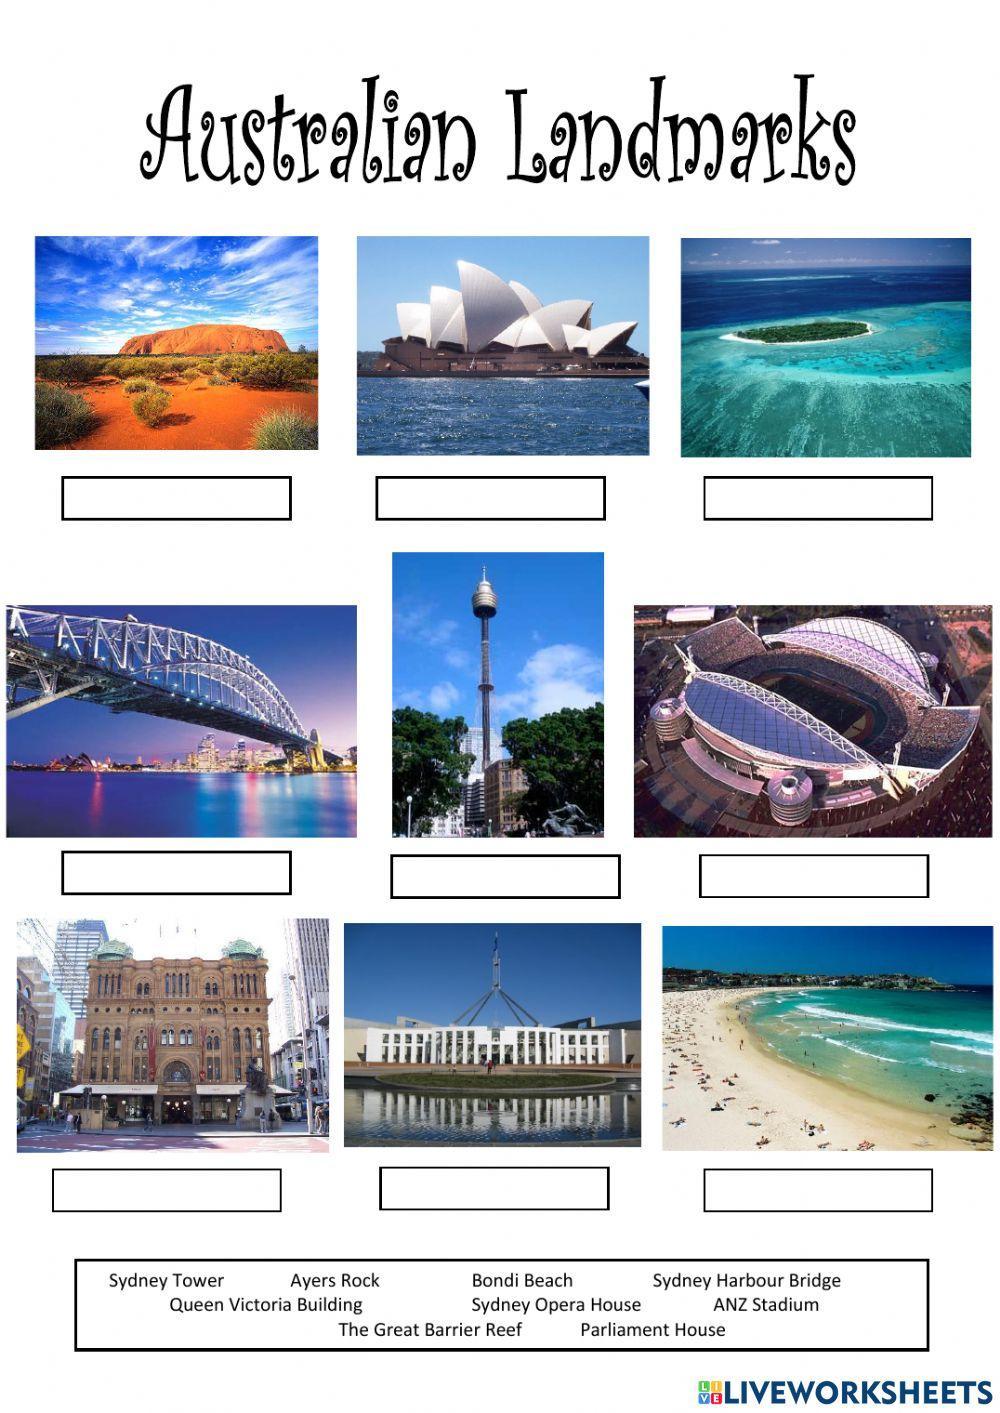 Australian landmarks